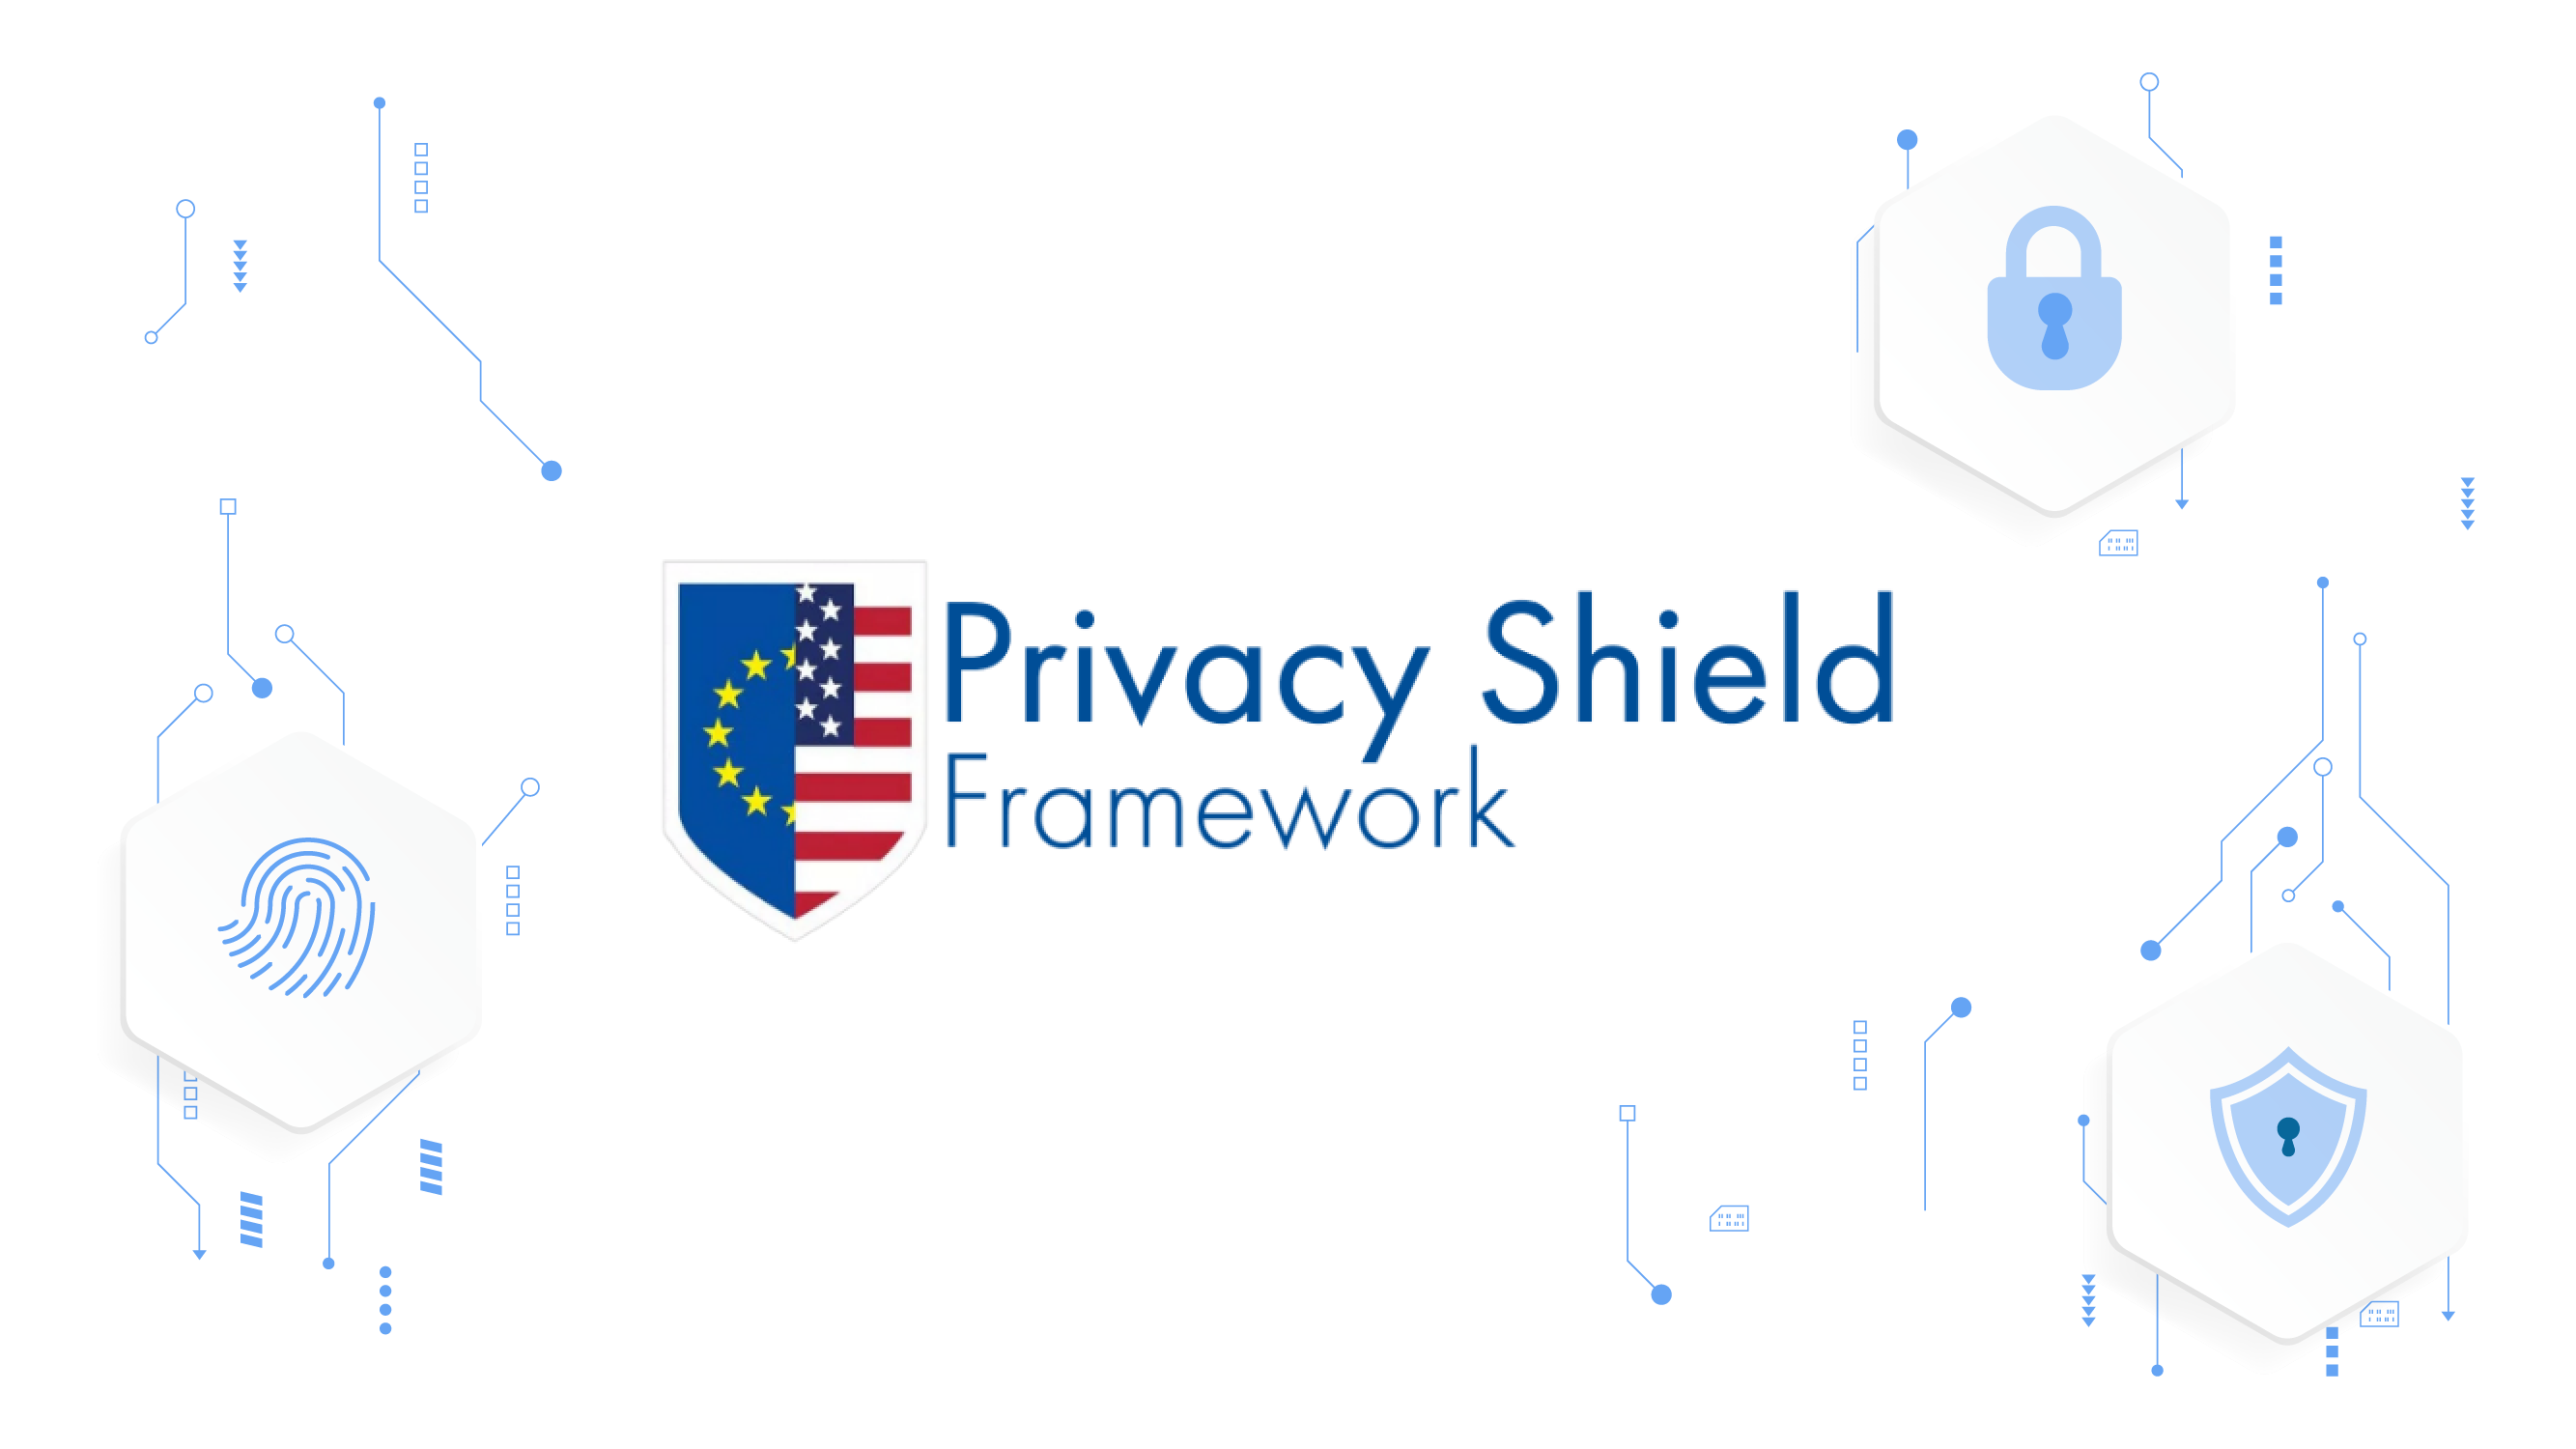 Privacy Shield
美國歐盟隱私盾
Ragic 已取得《美國歐盟隱私盾框架》與《美國瑞士隱私盾框架》認證